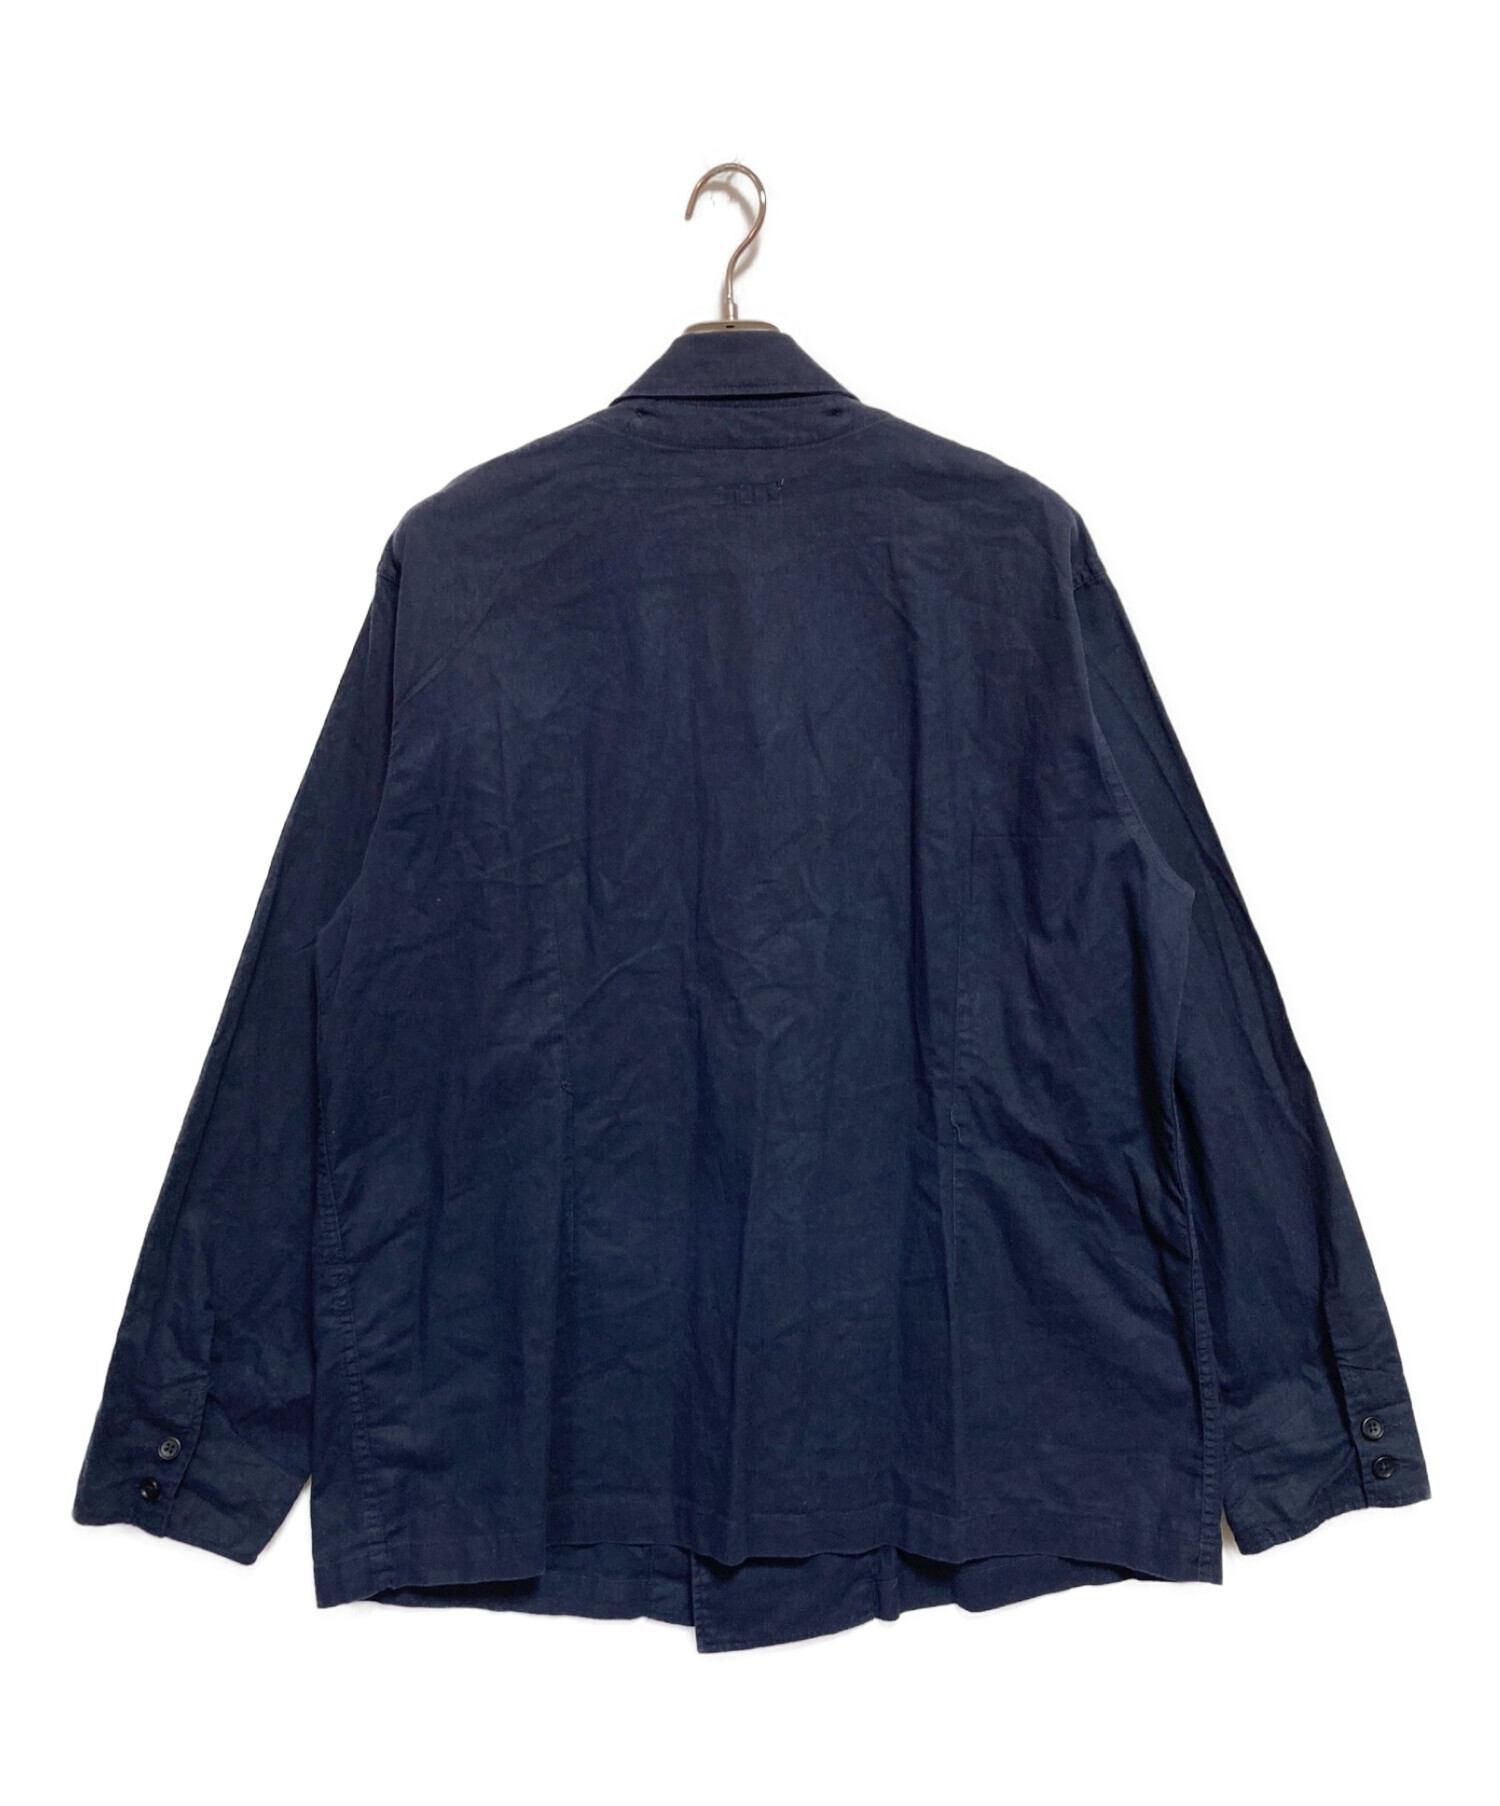 Engineered Garments (エンジニアド ガーメンツ) BEAMS PLUS (ビームスプラス) リネンブレンドジャケット ネイビー  サイズ:XL